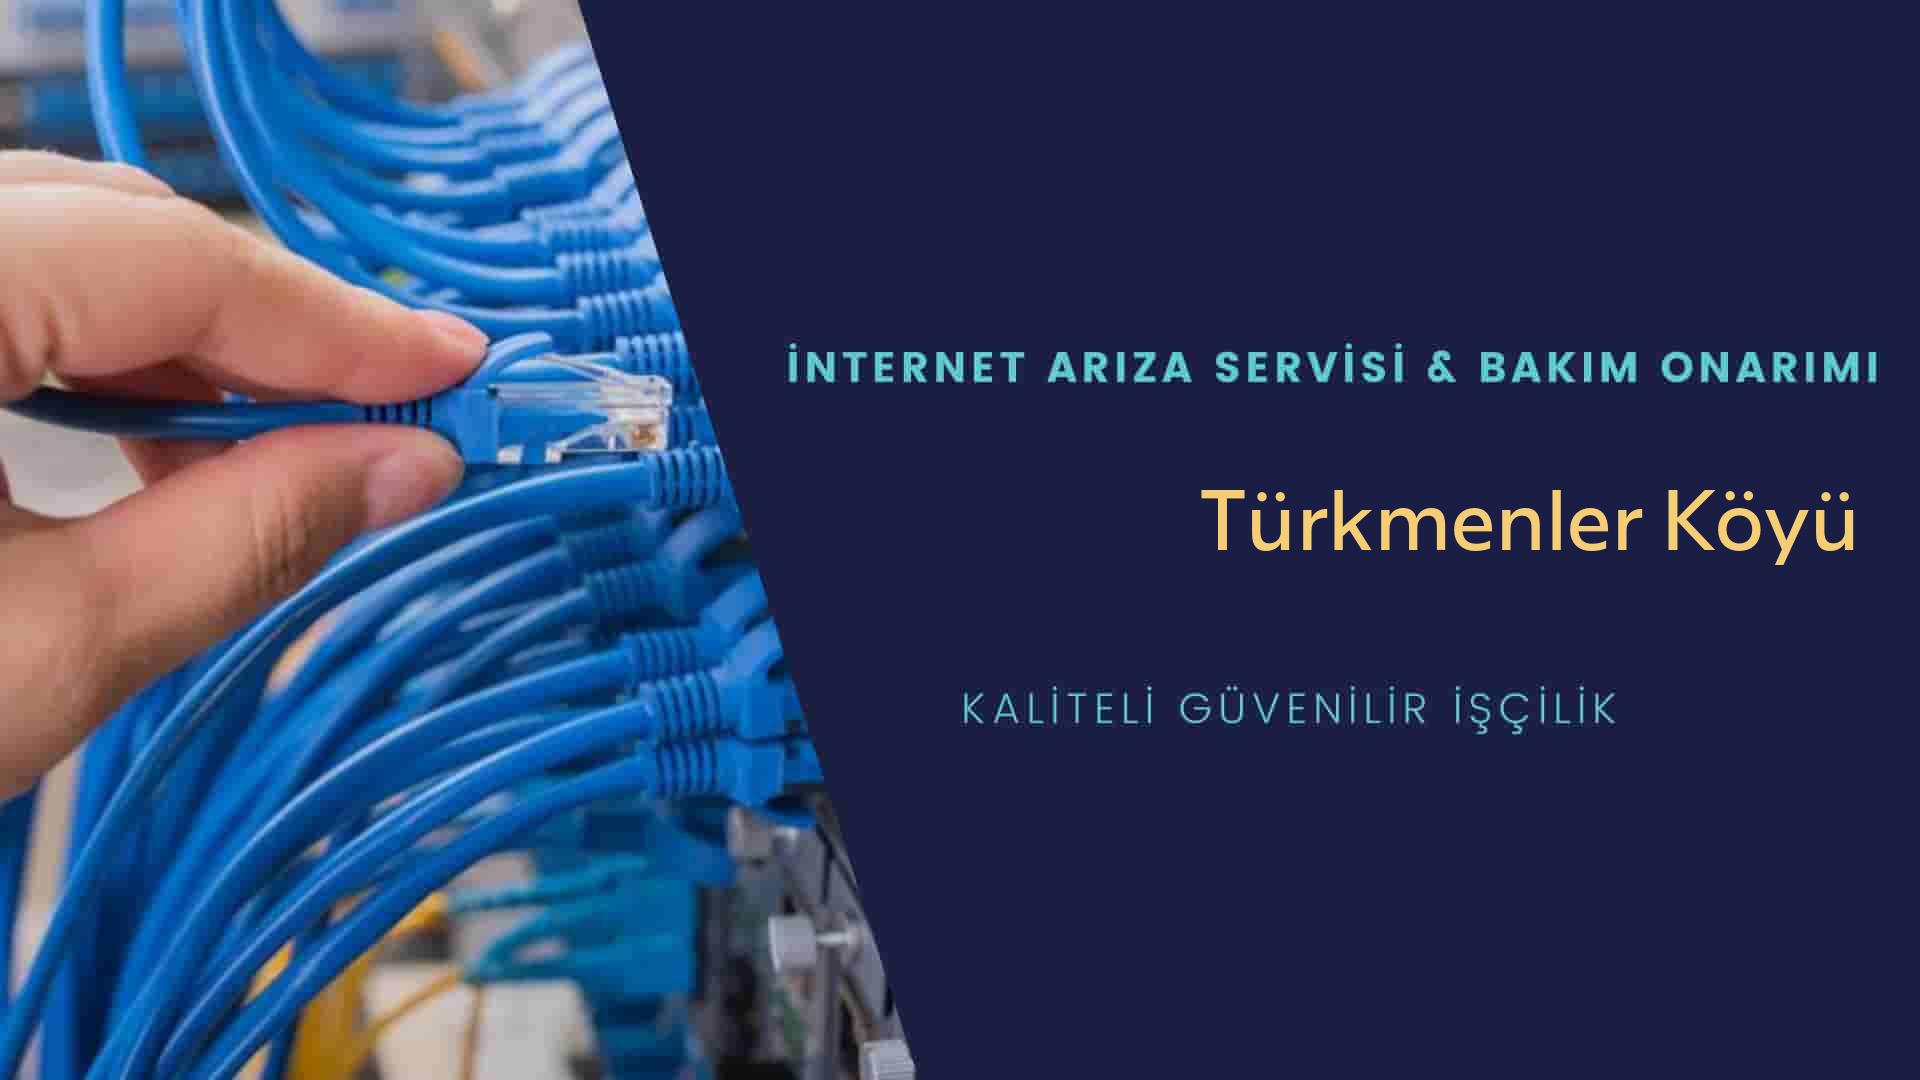 Türkmenler Köyü internet kablosu çekimi yapan yerler veya elektrikçiler mi? arıyorsunuz doğru yerdesiniz o zaman sizlere 7/24 yardımcı olacak profesyonel ustalarımız bir telefon kadar yakındır size.